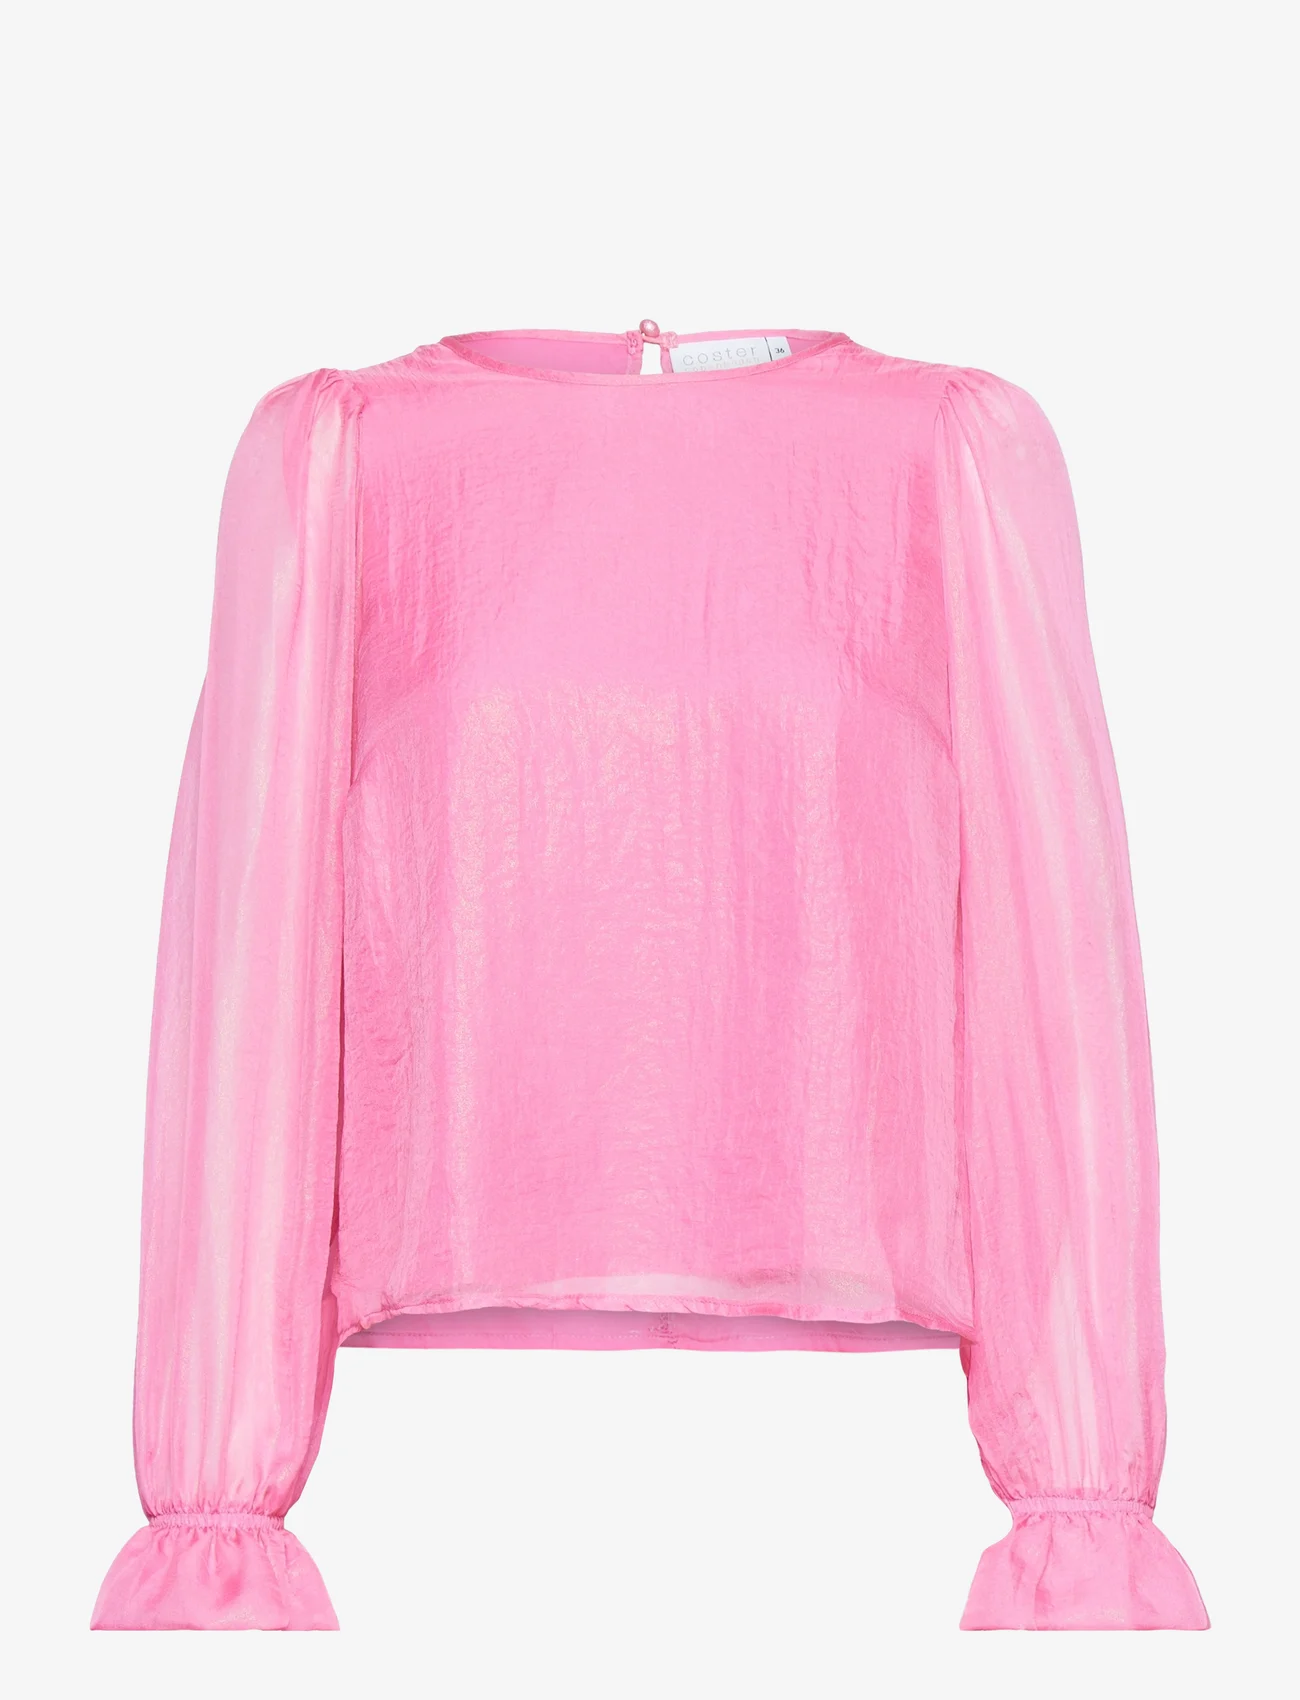 Coster Copenhagen - Top in metallic shimmer - long-sleeved blouses - metallic pink - 0